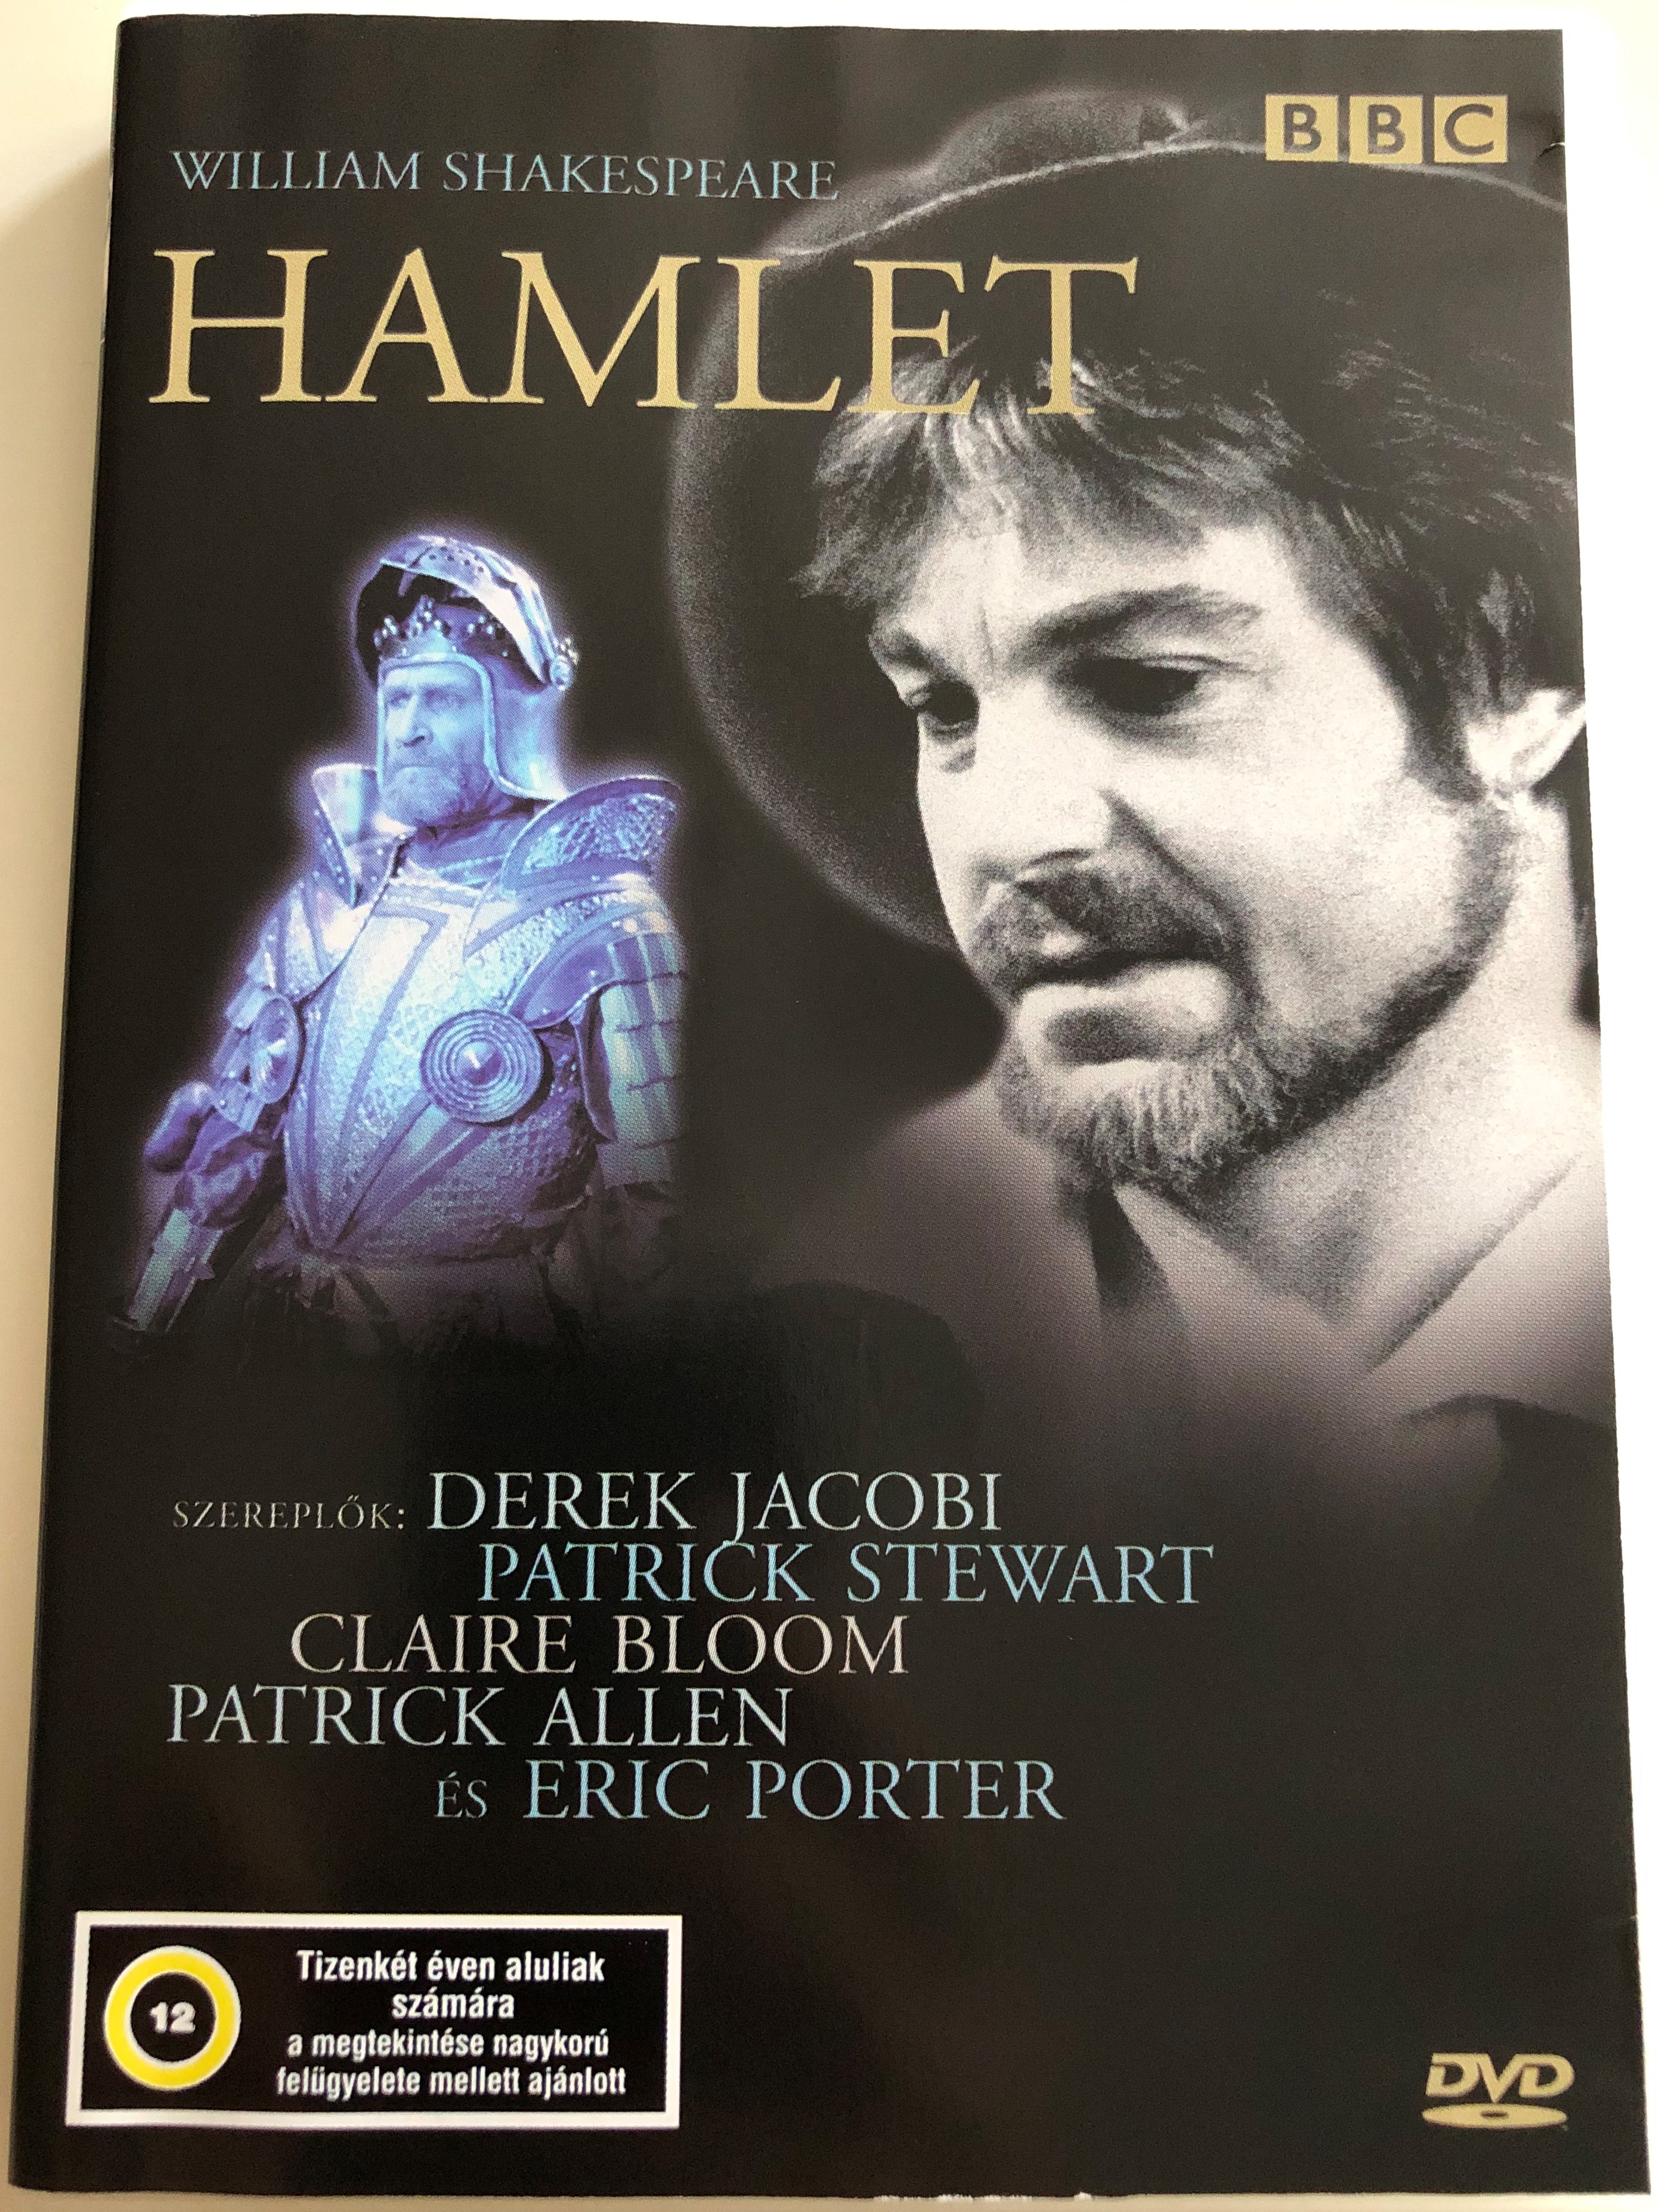 William Shakespeare - Hamlet DVD 1980 / BBC Theatre Play / Directed by  Rodney Bennett / Cast: Derek Jacobi - Hamlet, Claire Bloom - Gertrude,  Patrick Stewart - Claudius, Lalla Ward - Ophelia - bibleinmylanguage